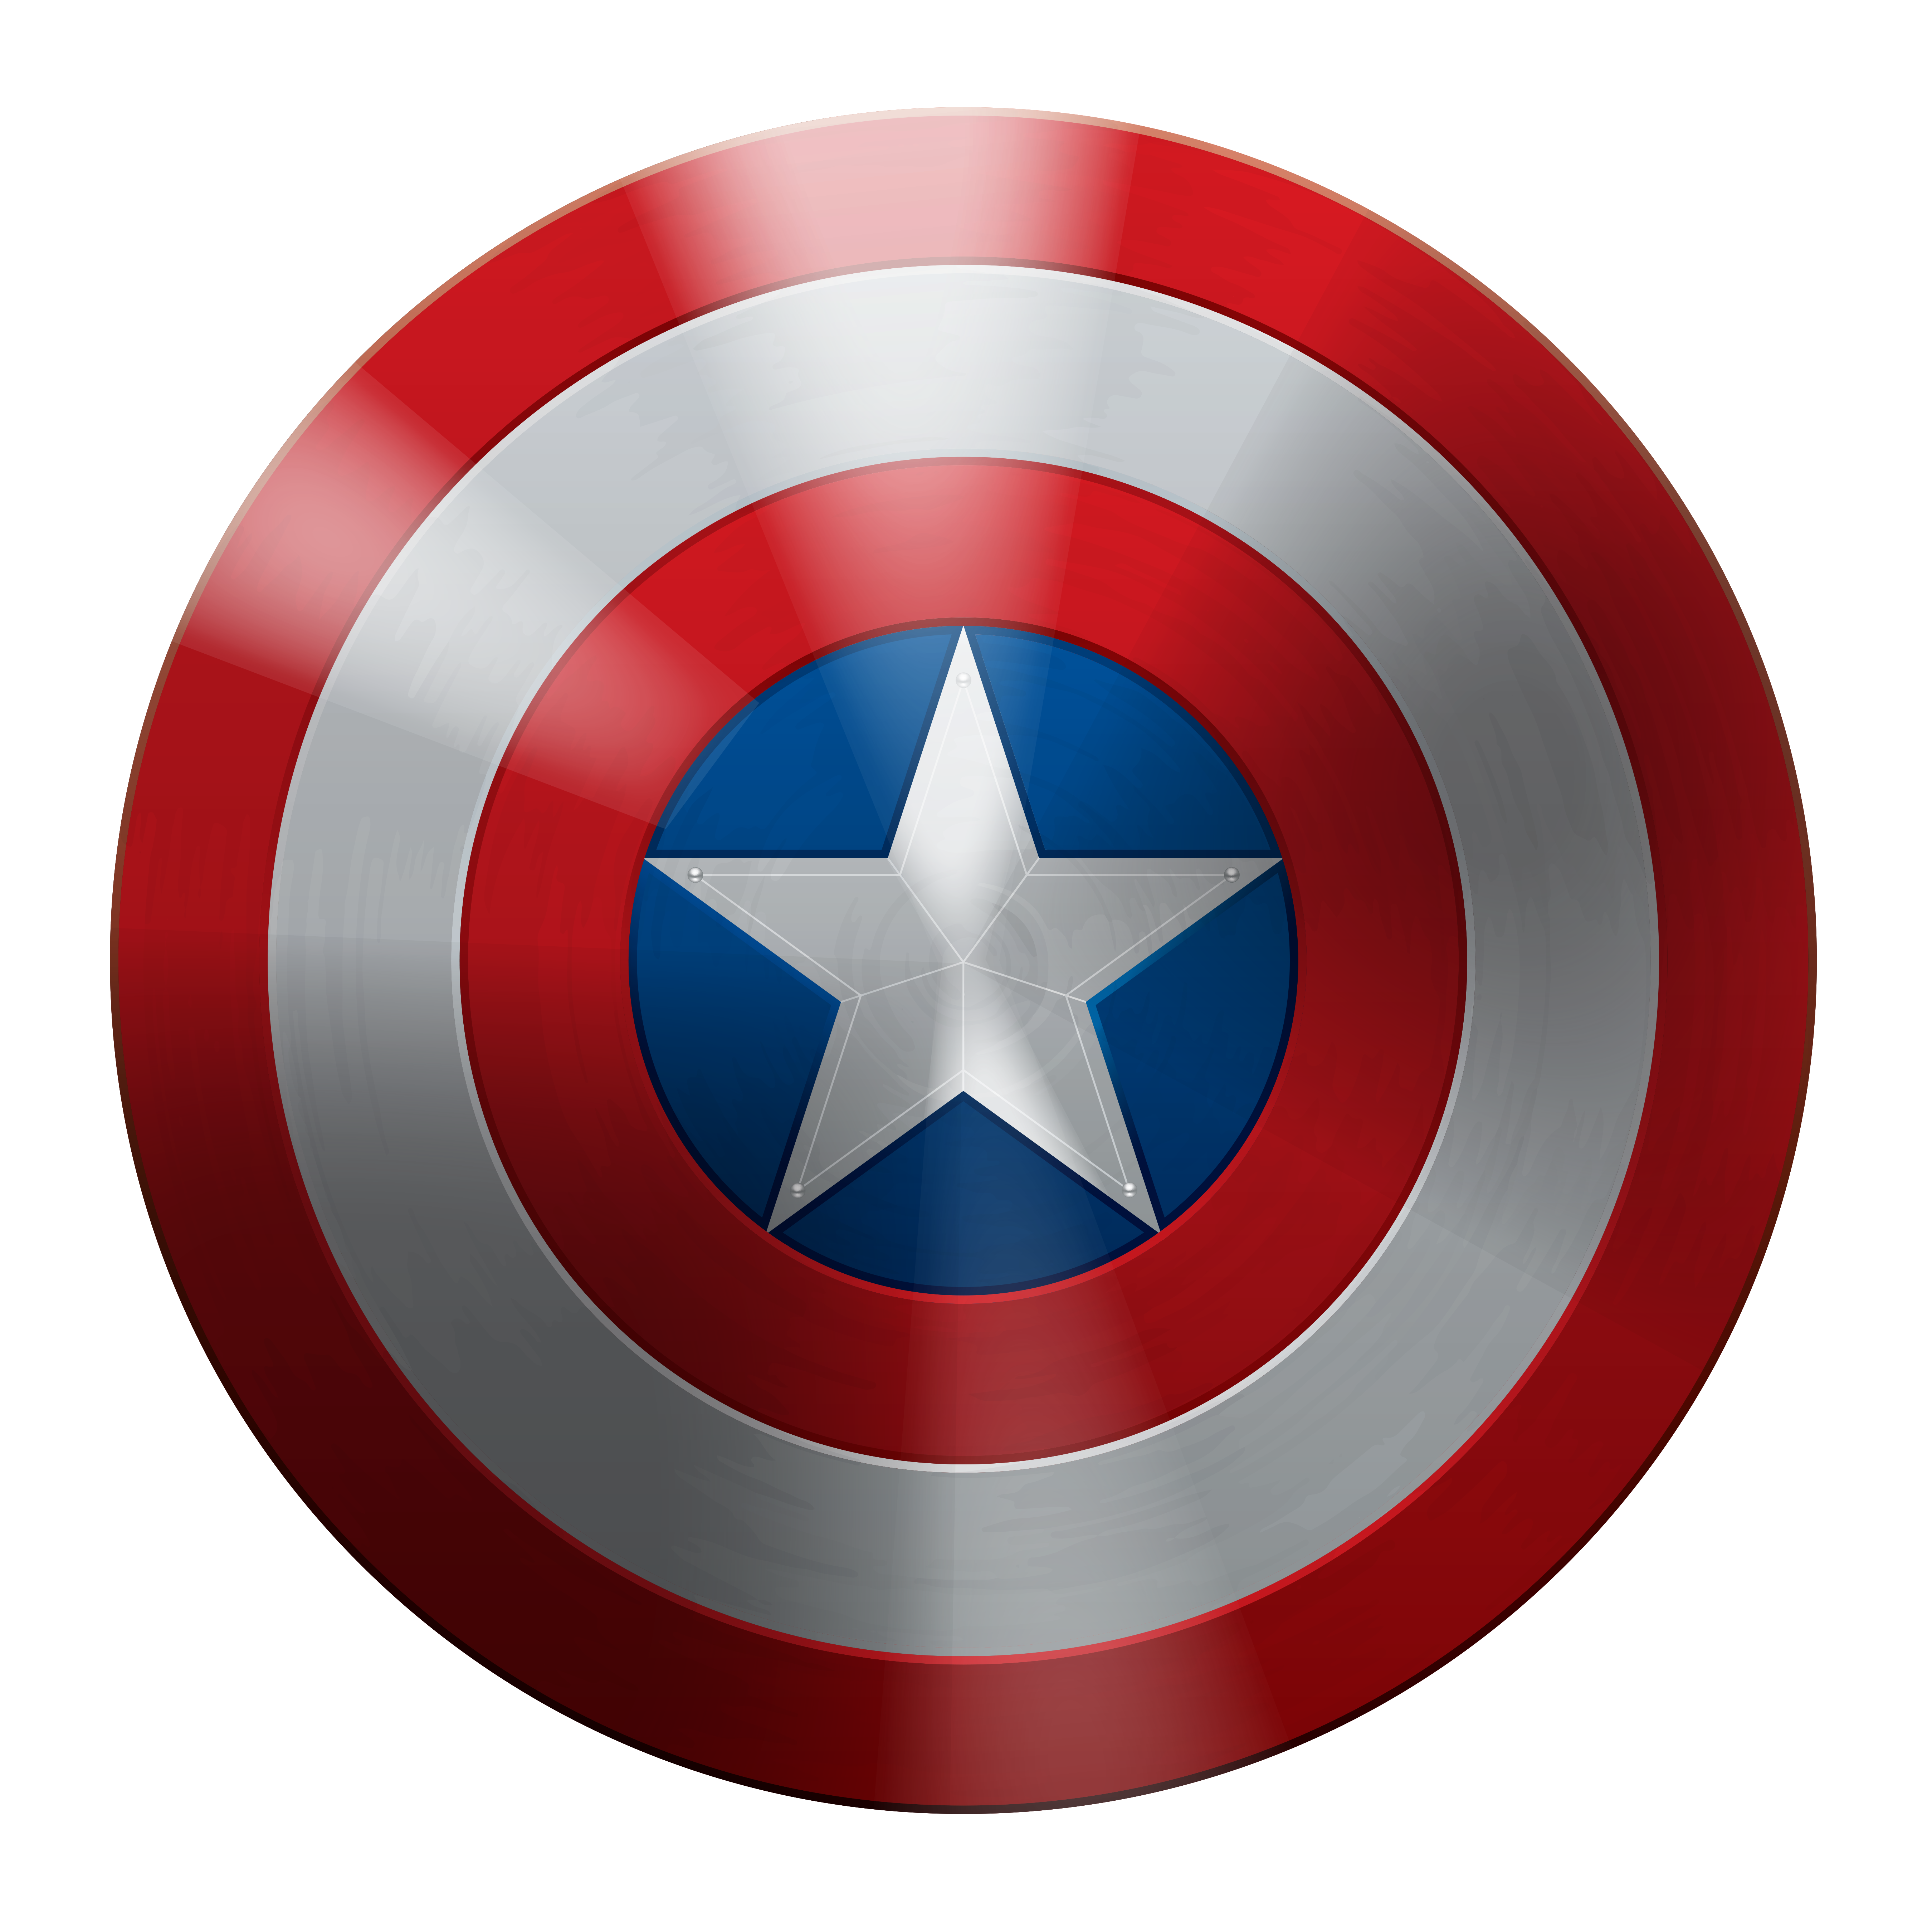 Captain America Shield by seehawk on DeviantArt